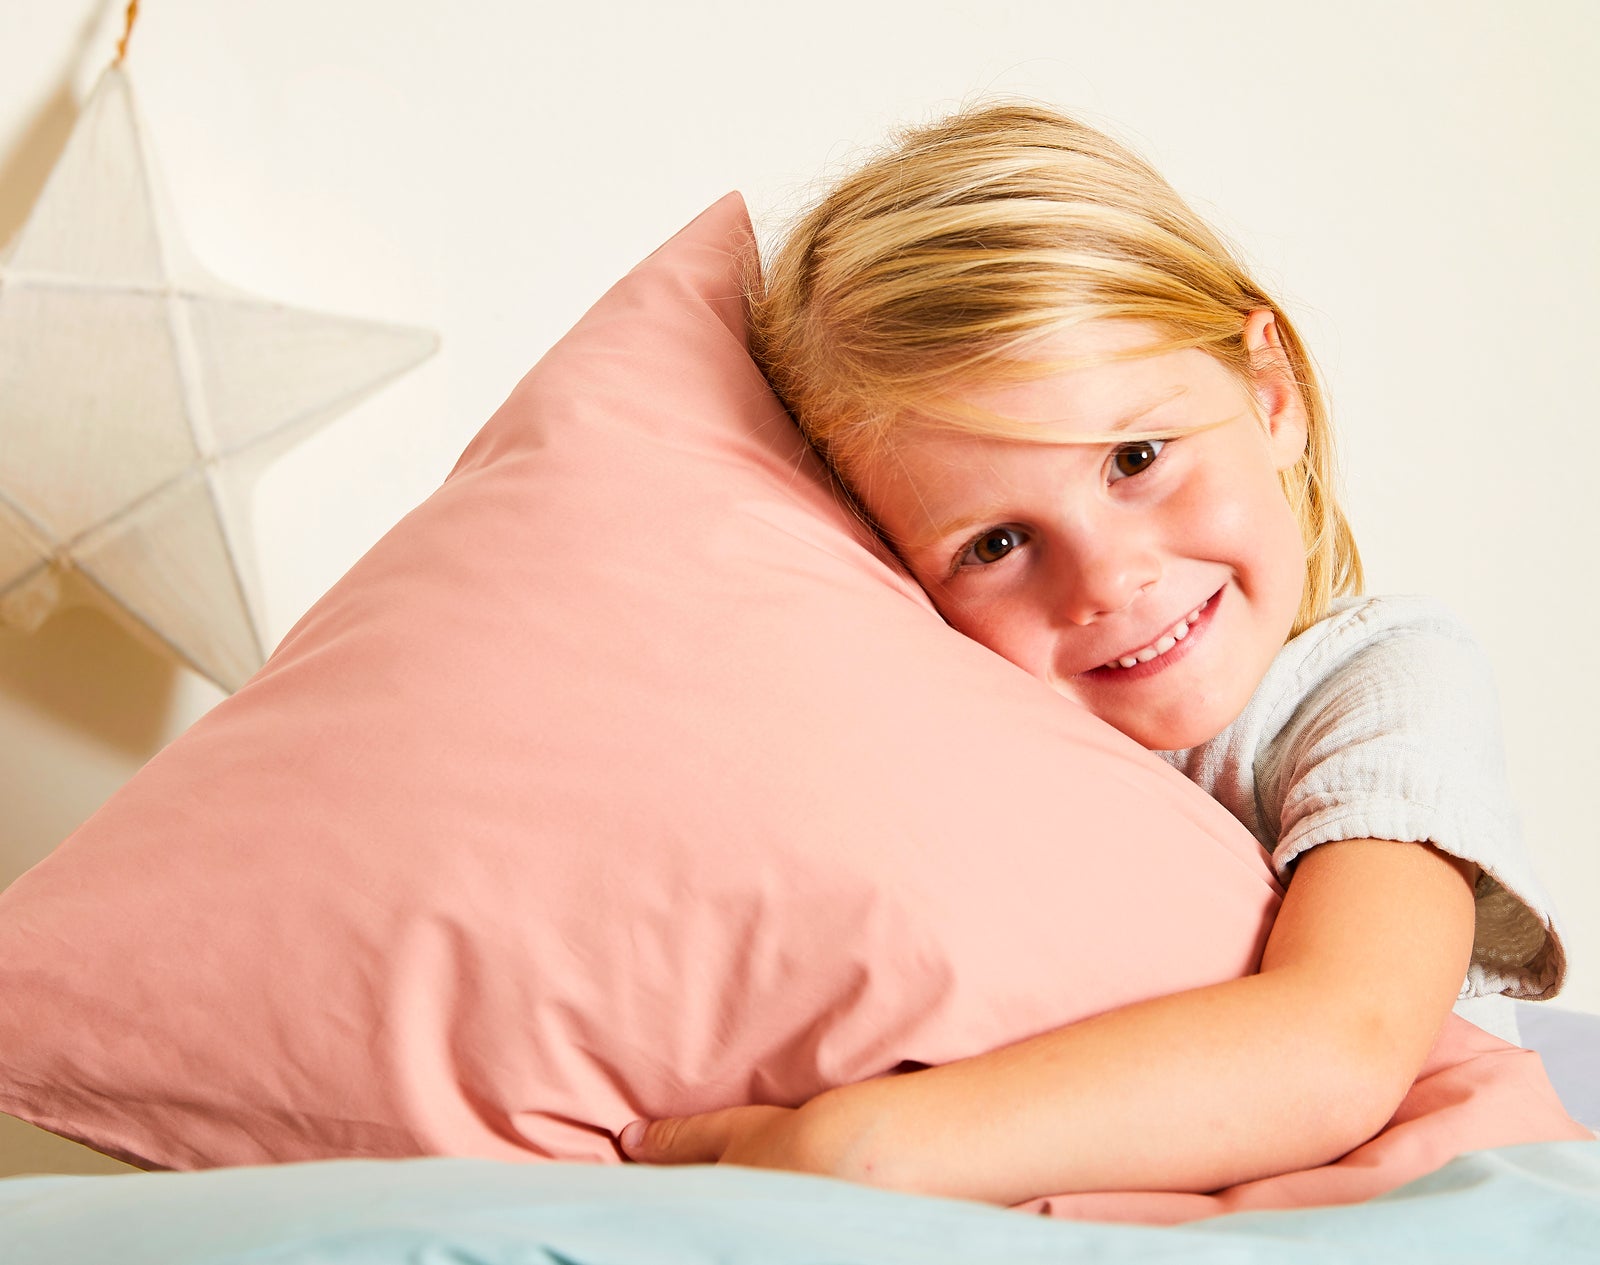 Mini oreiller pour enfant avec taie d'oreiller – 58,4 x 83,8 cm